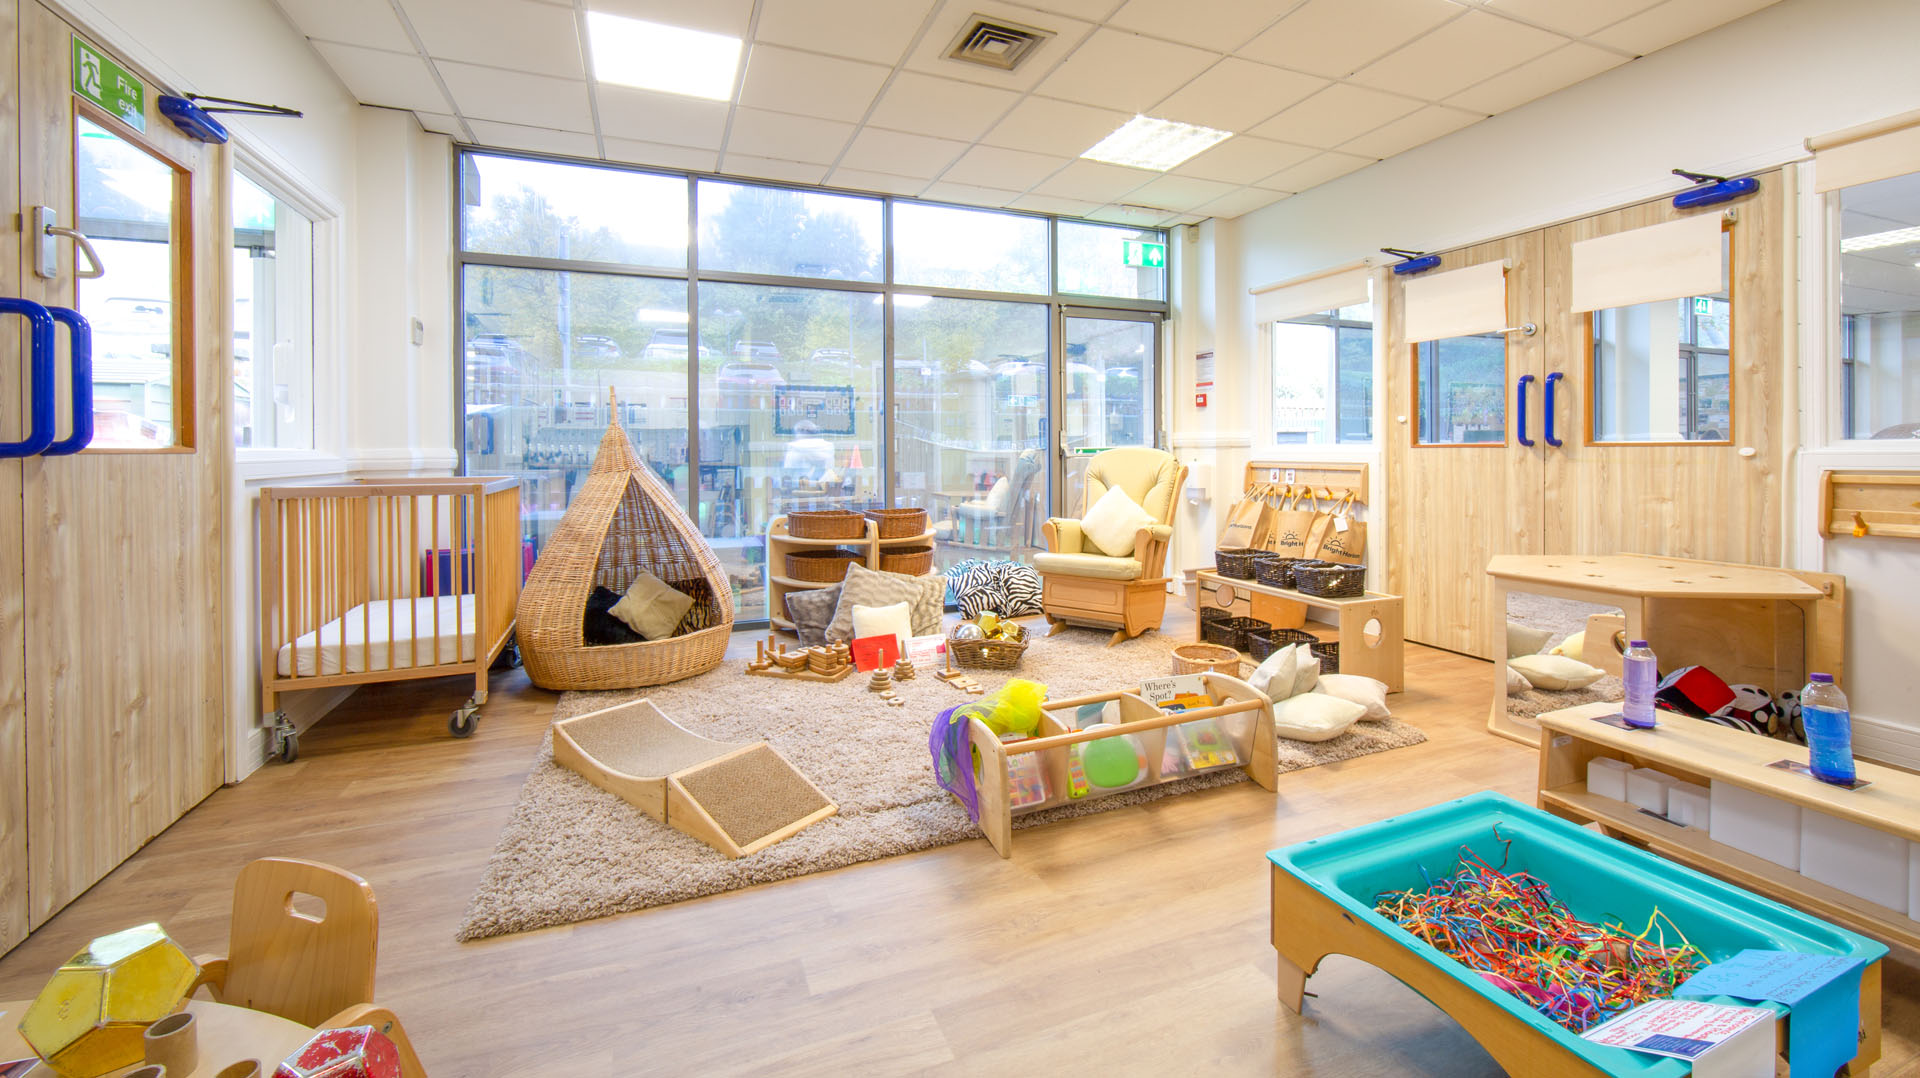 Moortown Day Nursery and Preschool baby room